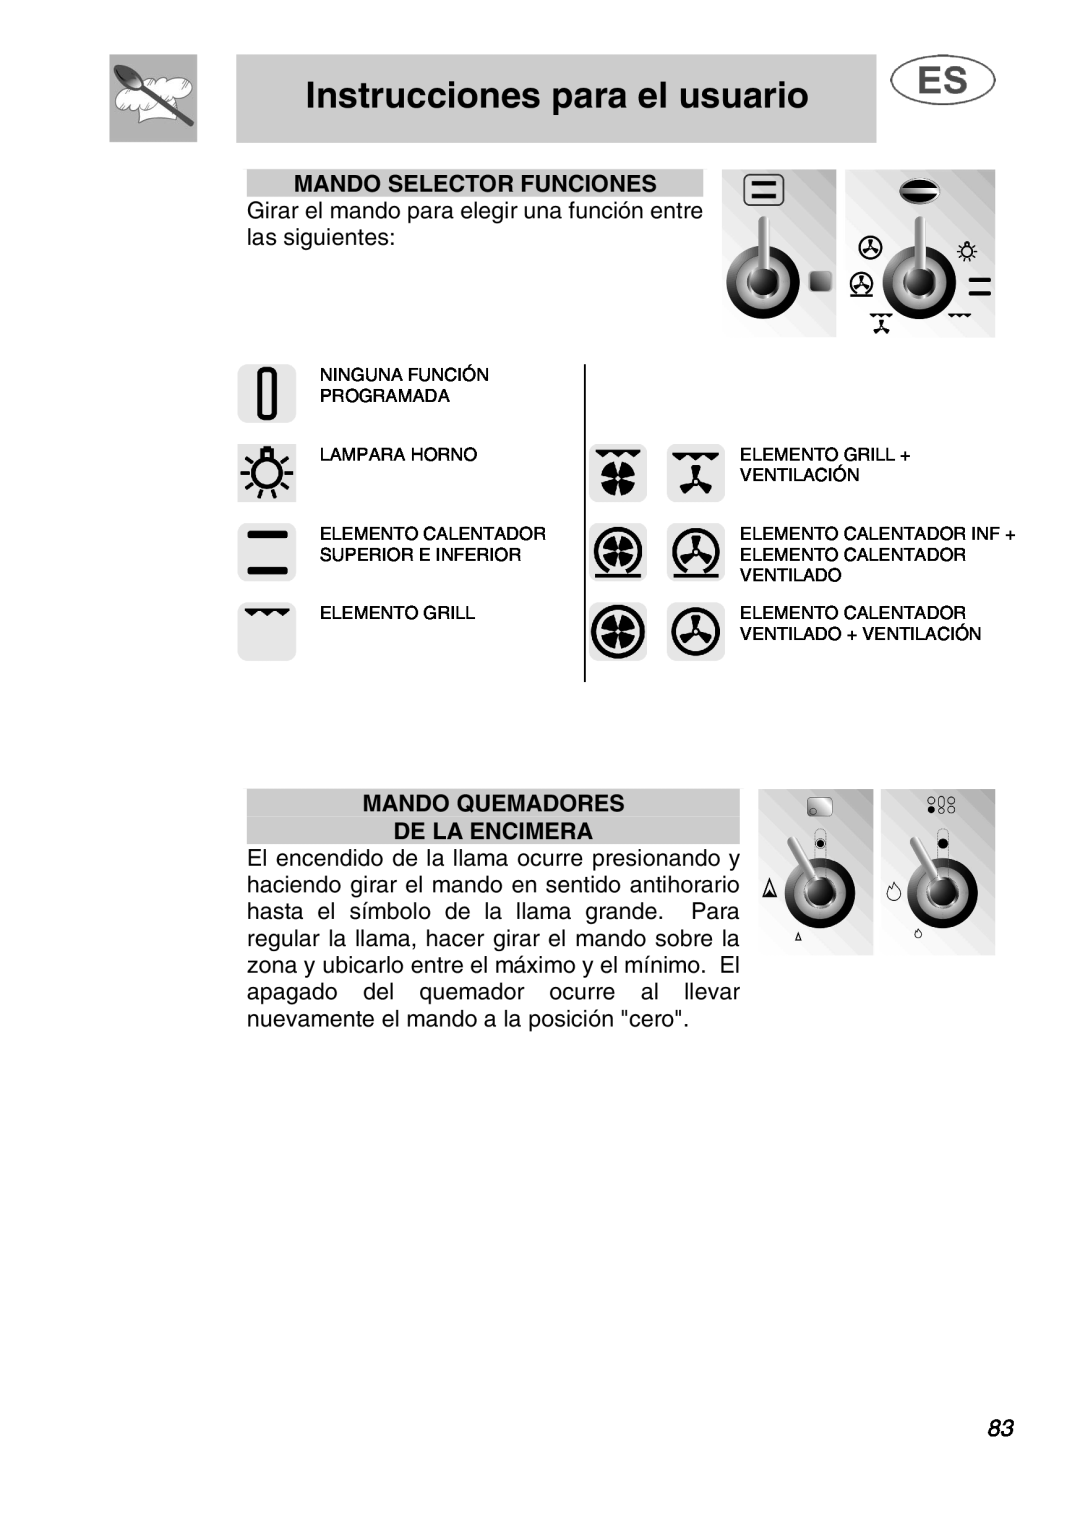 Smeg A1.1K instruction manual Mando Selector Funciones, Mando Quemadores De La Encimera, Instrucciones para el usuario 